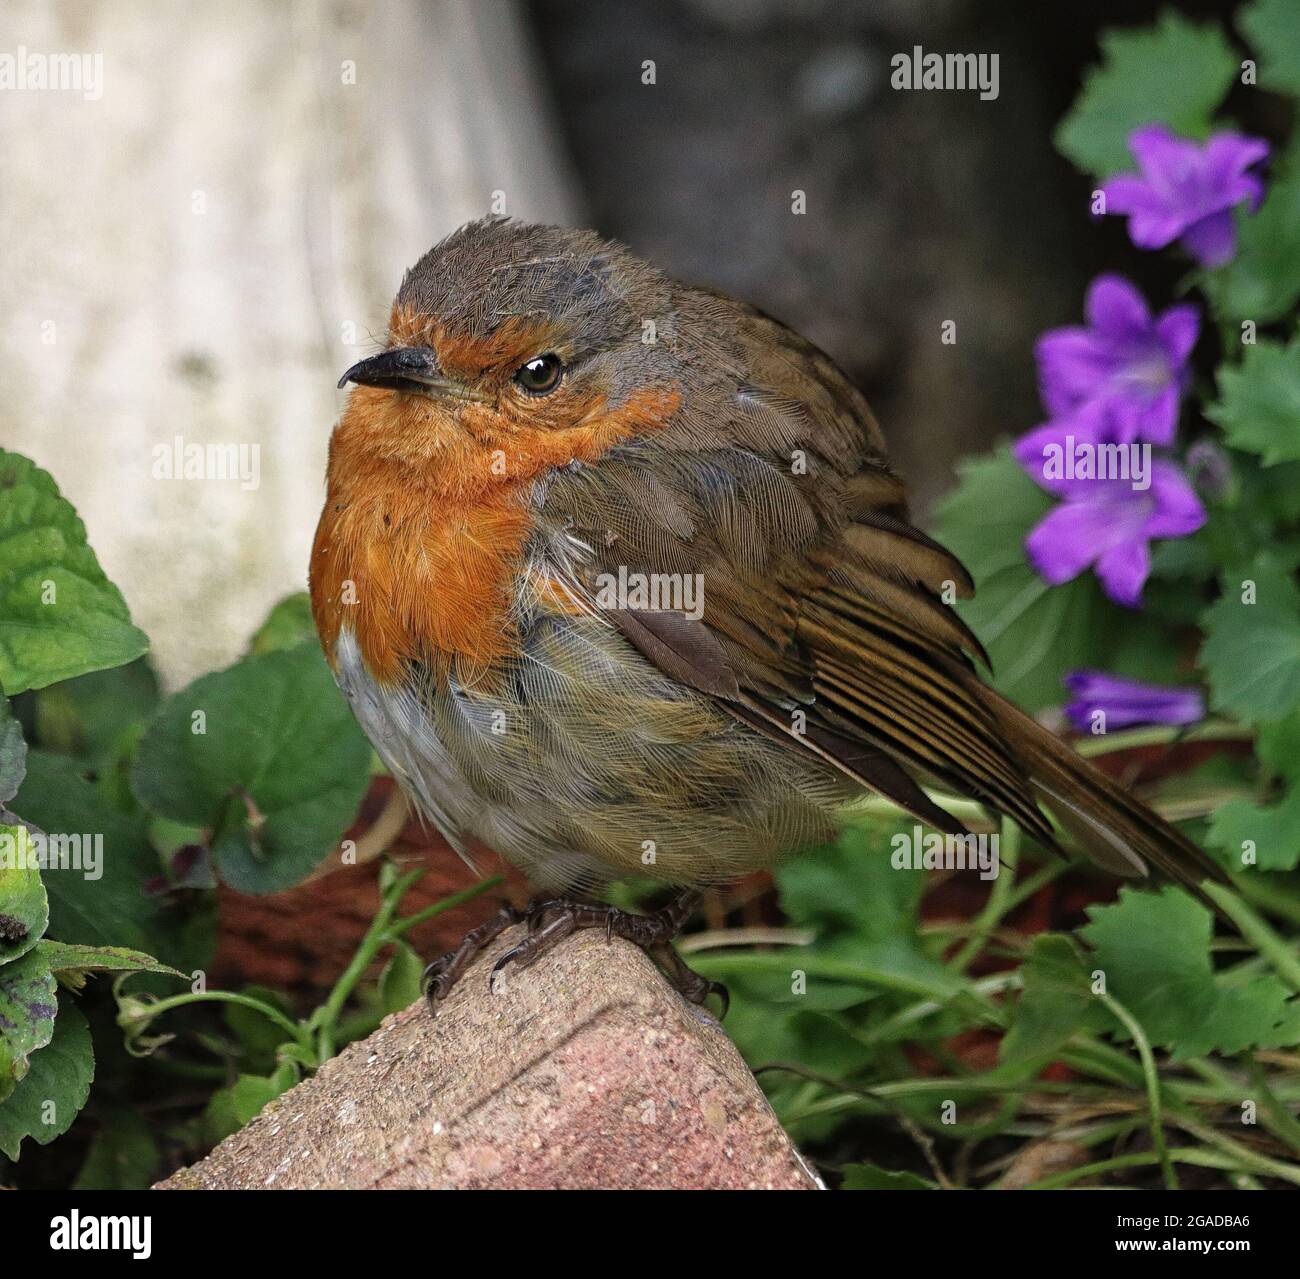 Robin européenne ou anglaise perchée sur une pierre de jardin (erithacus Rubecula) Banque D'Images